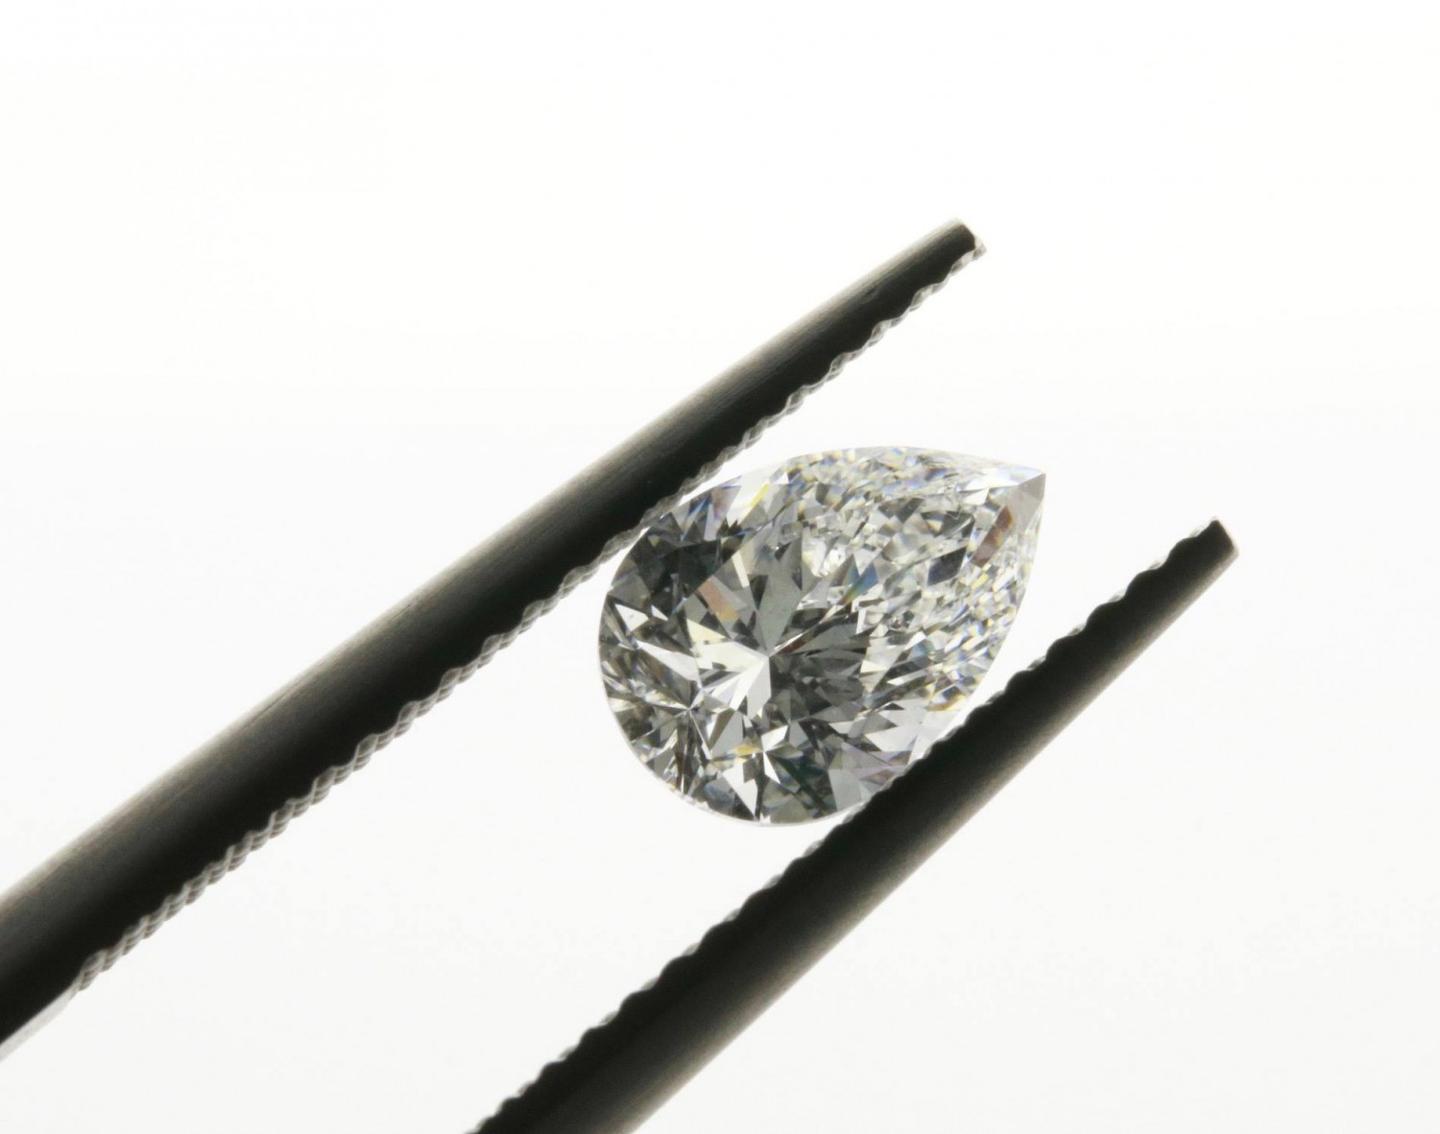 3 raisons principales pour lesquelles vous devriez investir dans les diamants